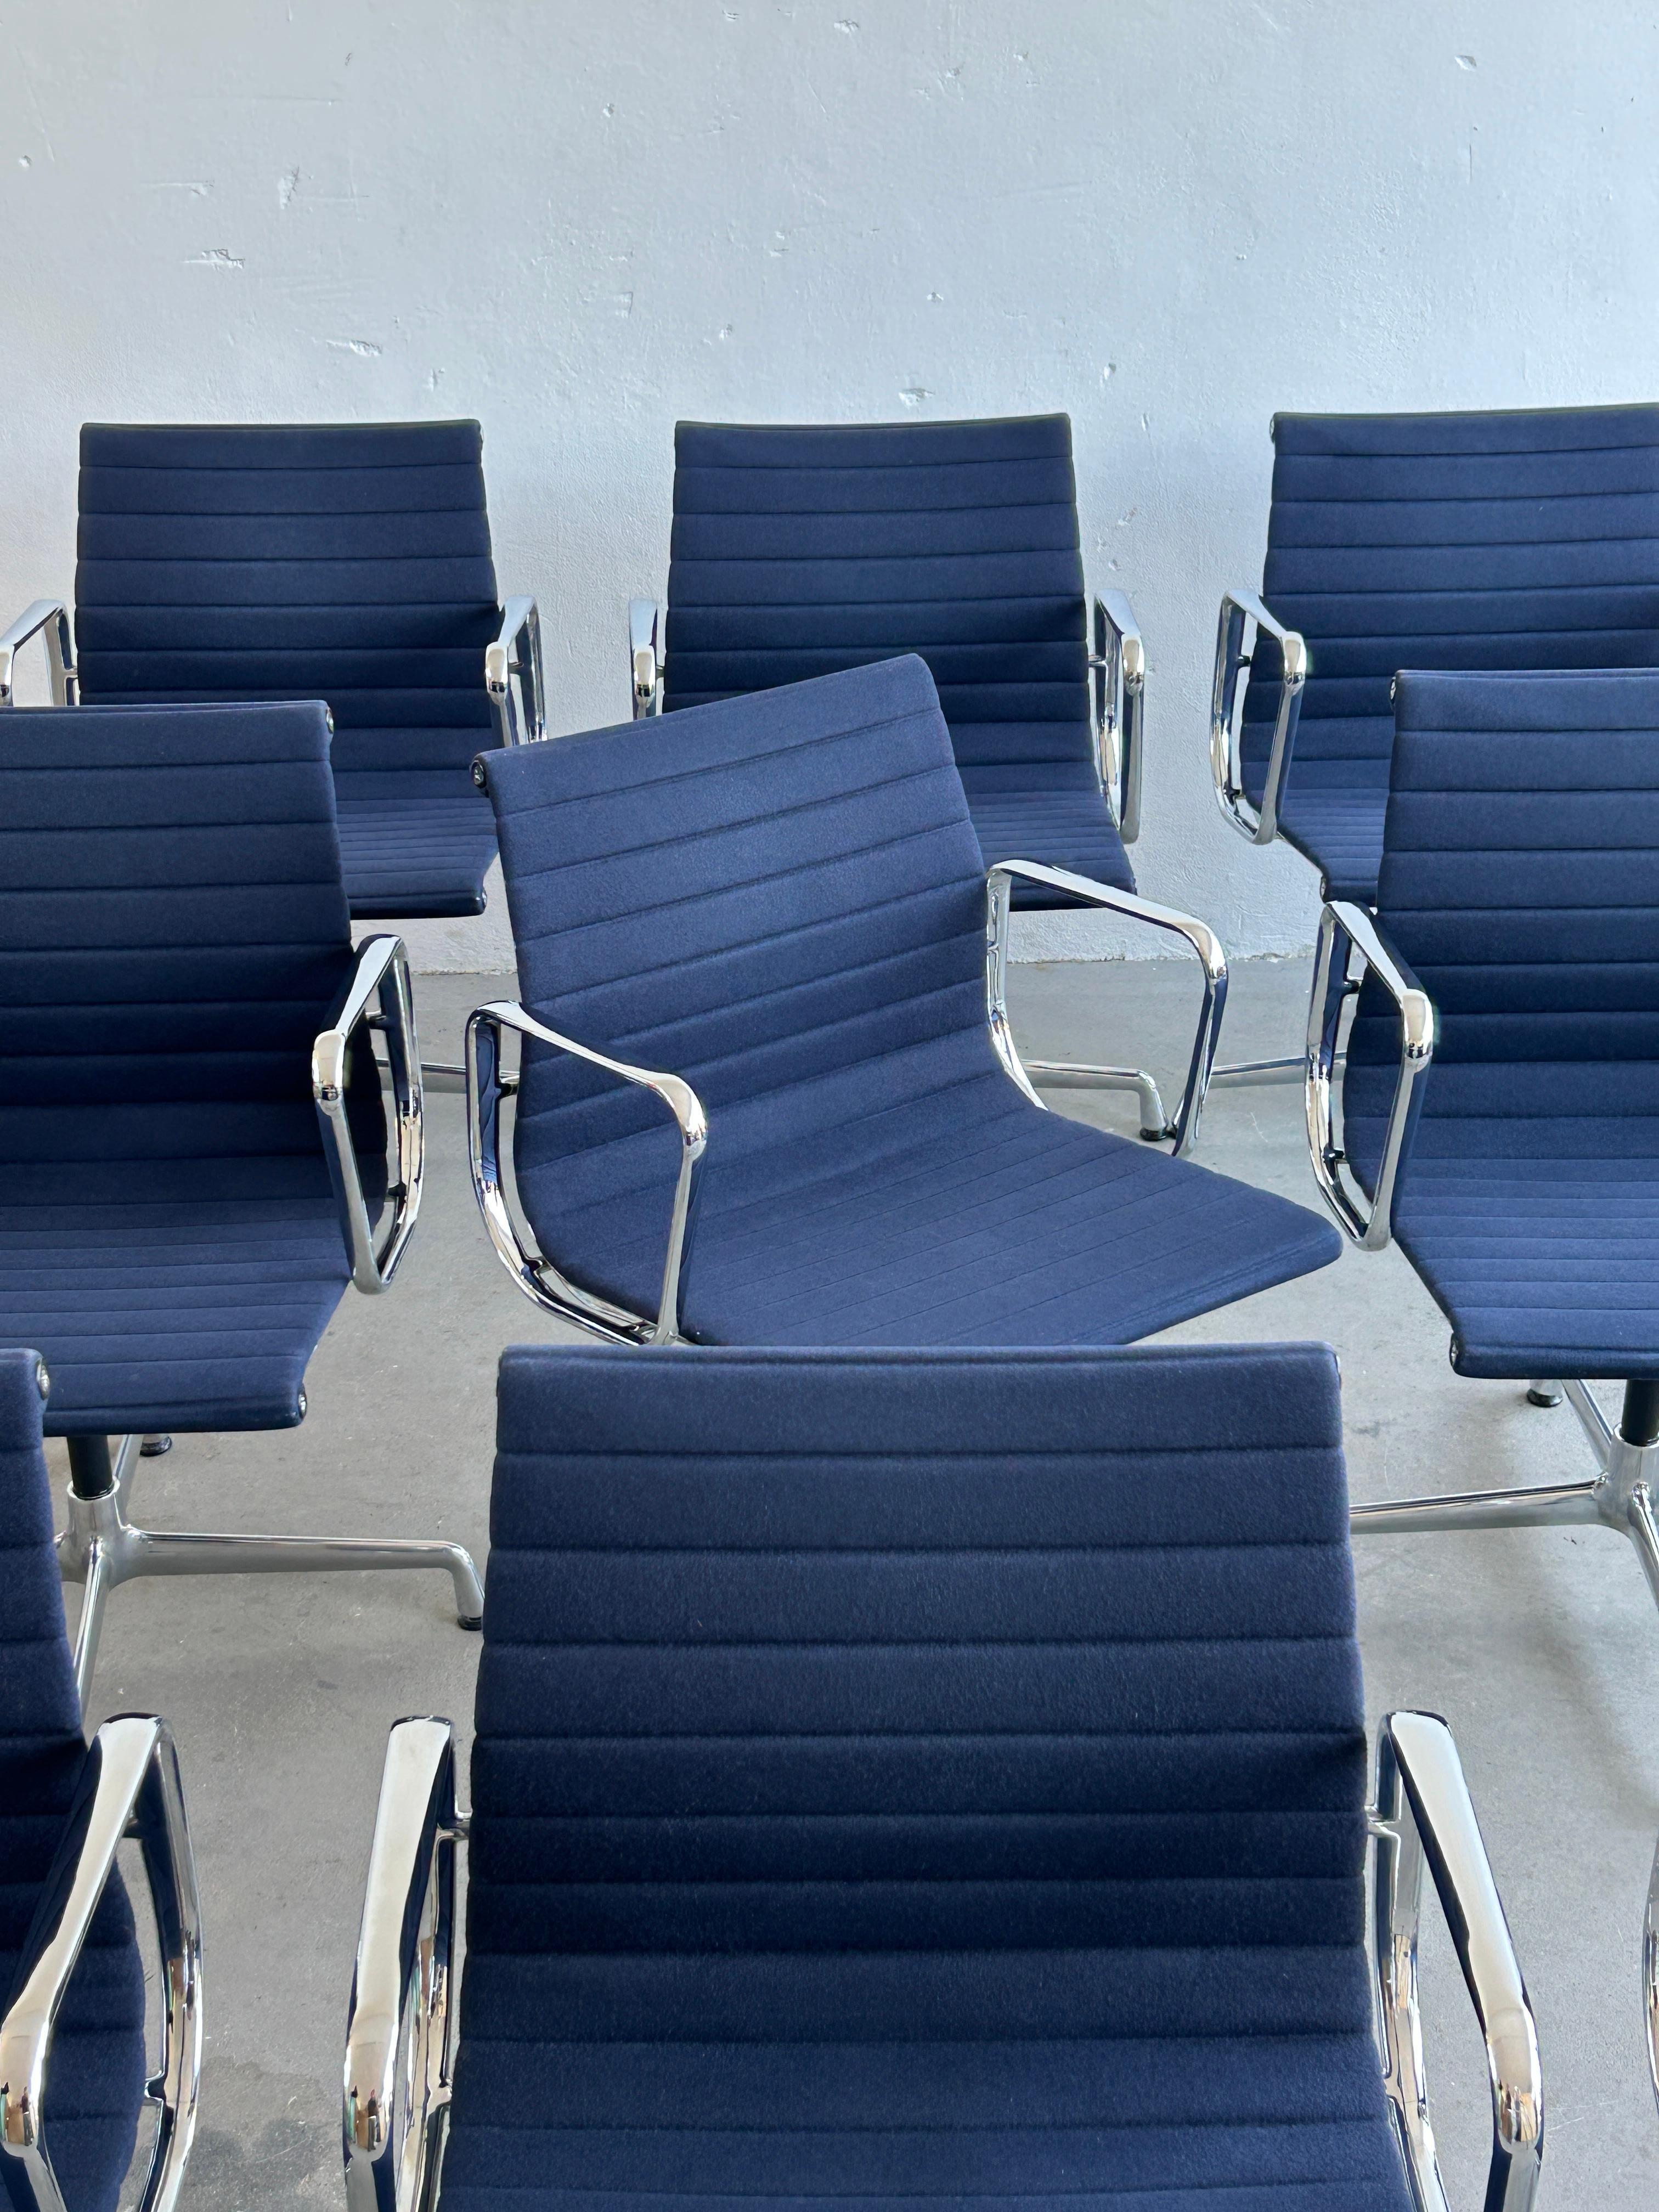 Ensemble de douze chaises originales en aluminium EA108 conçues par Charles et Ray Eames en 1958.
Base en aluminium chromé et siège en tissu bleu avec mécanisme pivotant. Édition Vitra, signée.
Une qualité de production exceptionnelle.

Produit